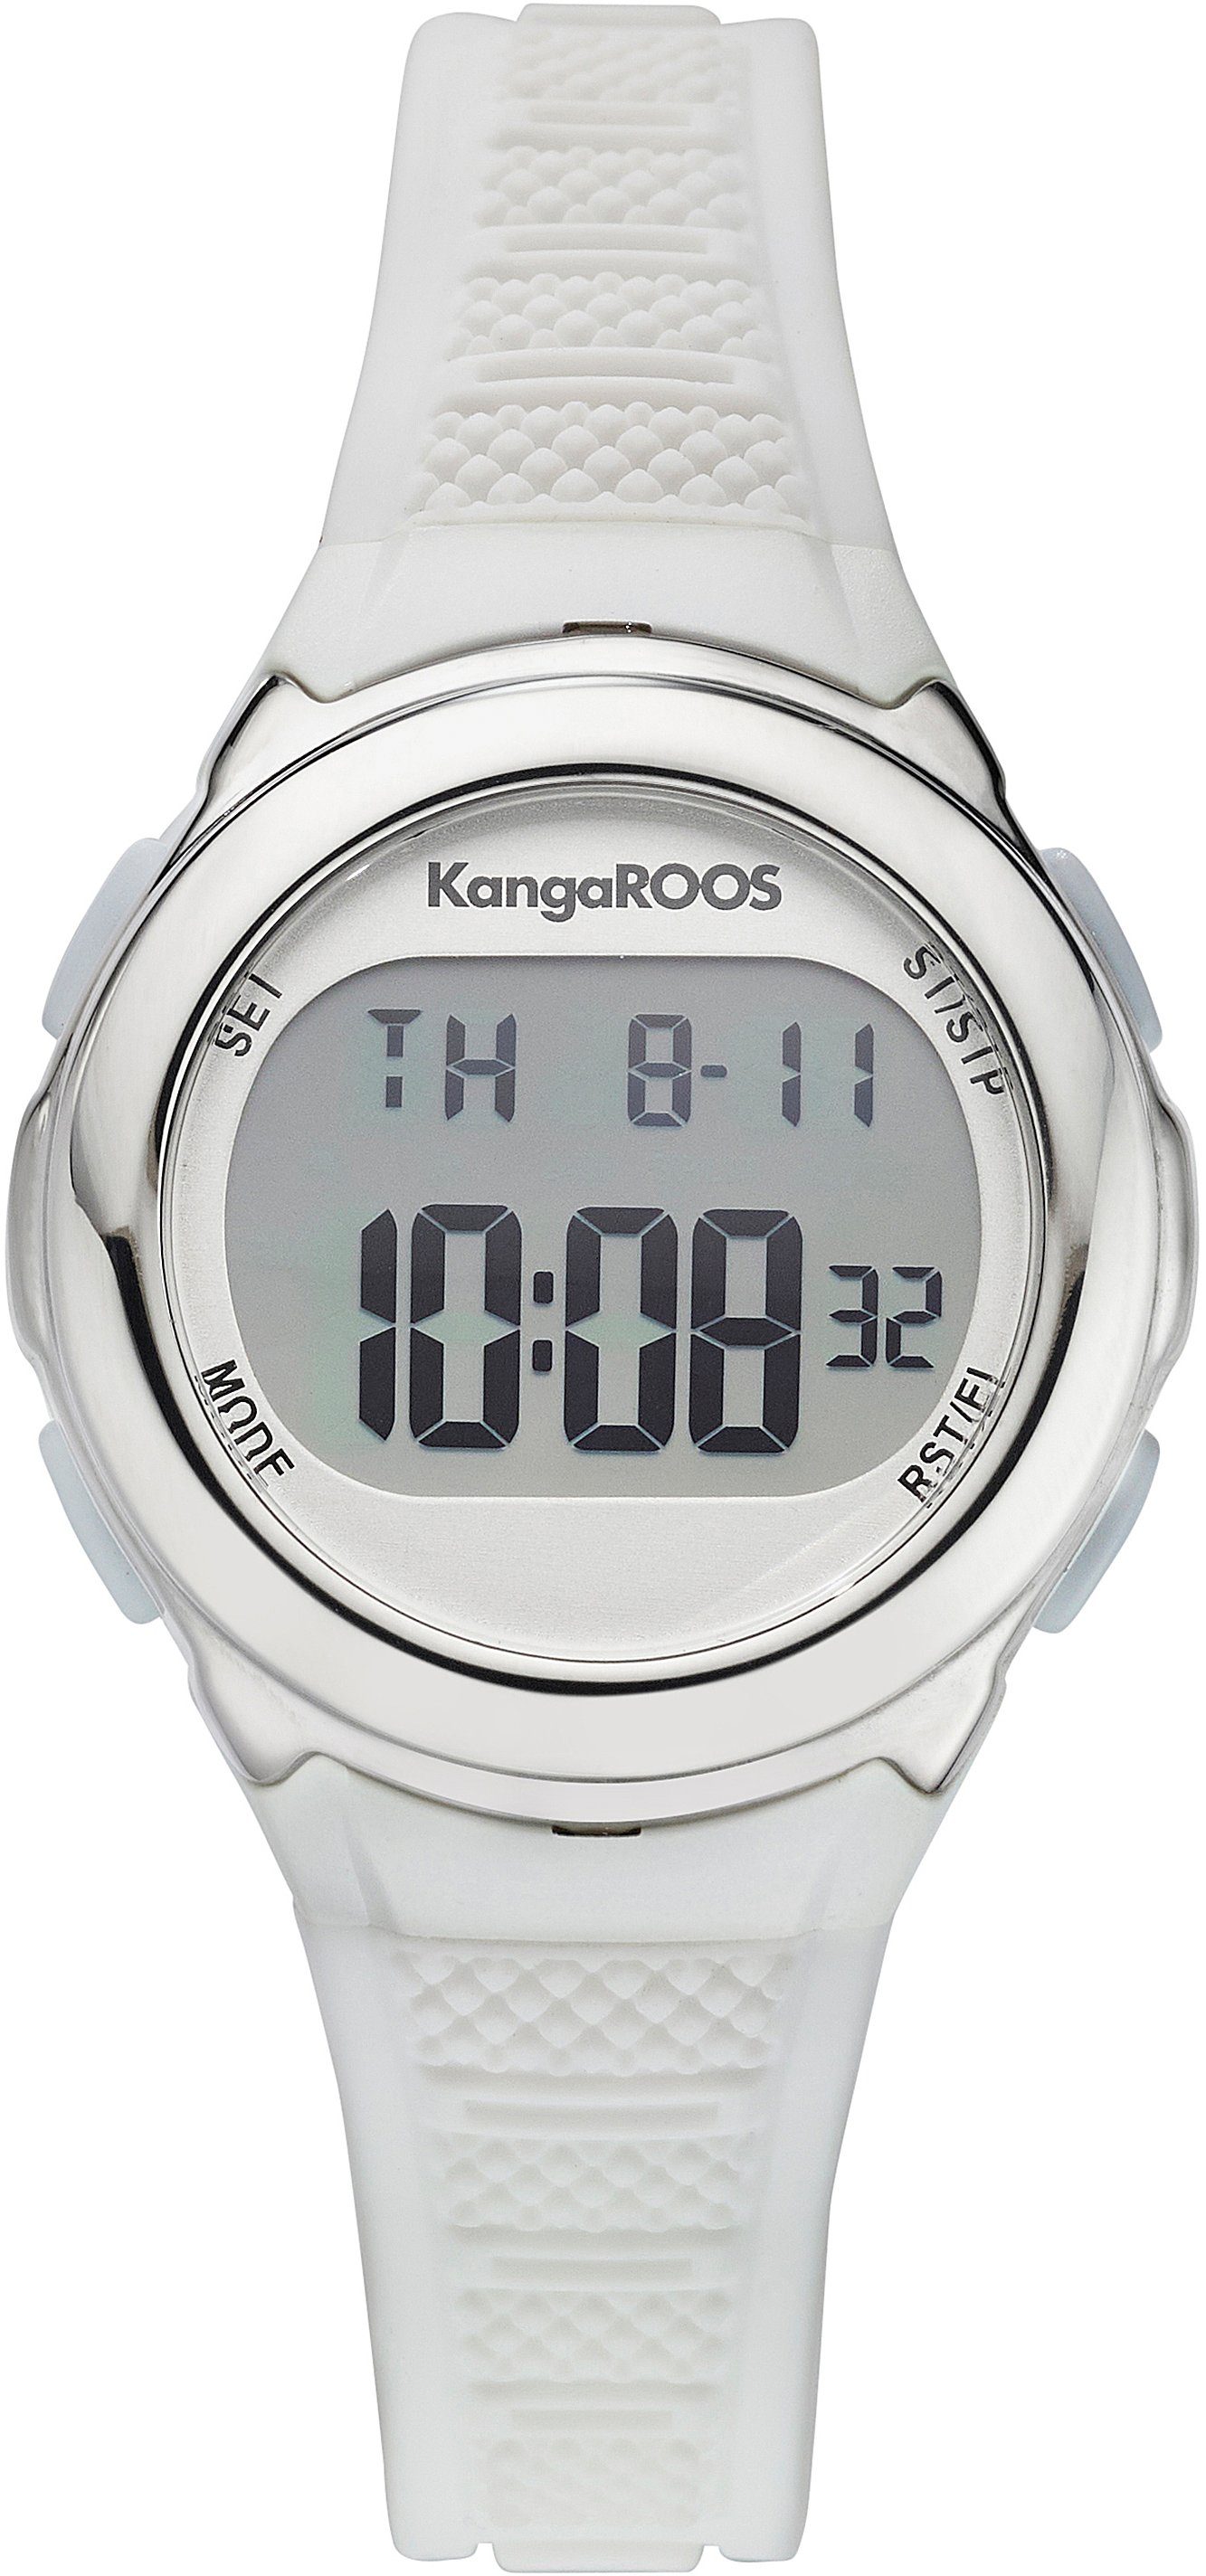 KangaROOS Chronograph, ideal auch aus Geschenk, Armband als weichem Silikon